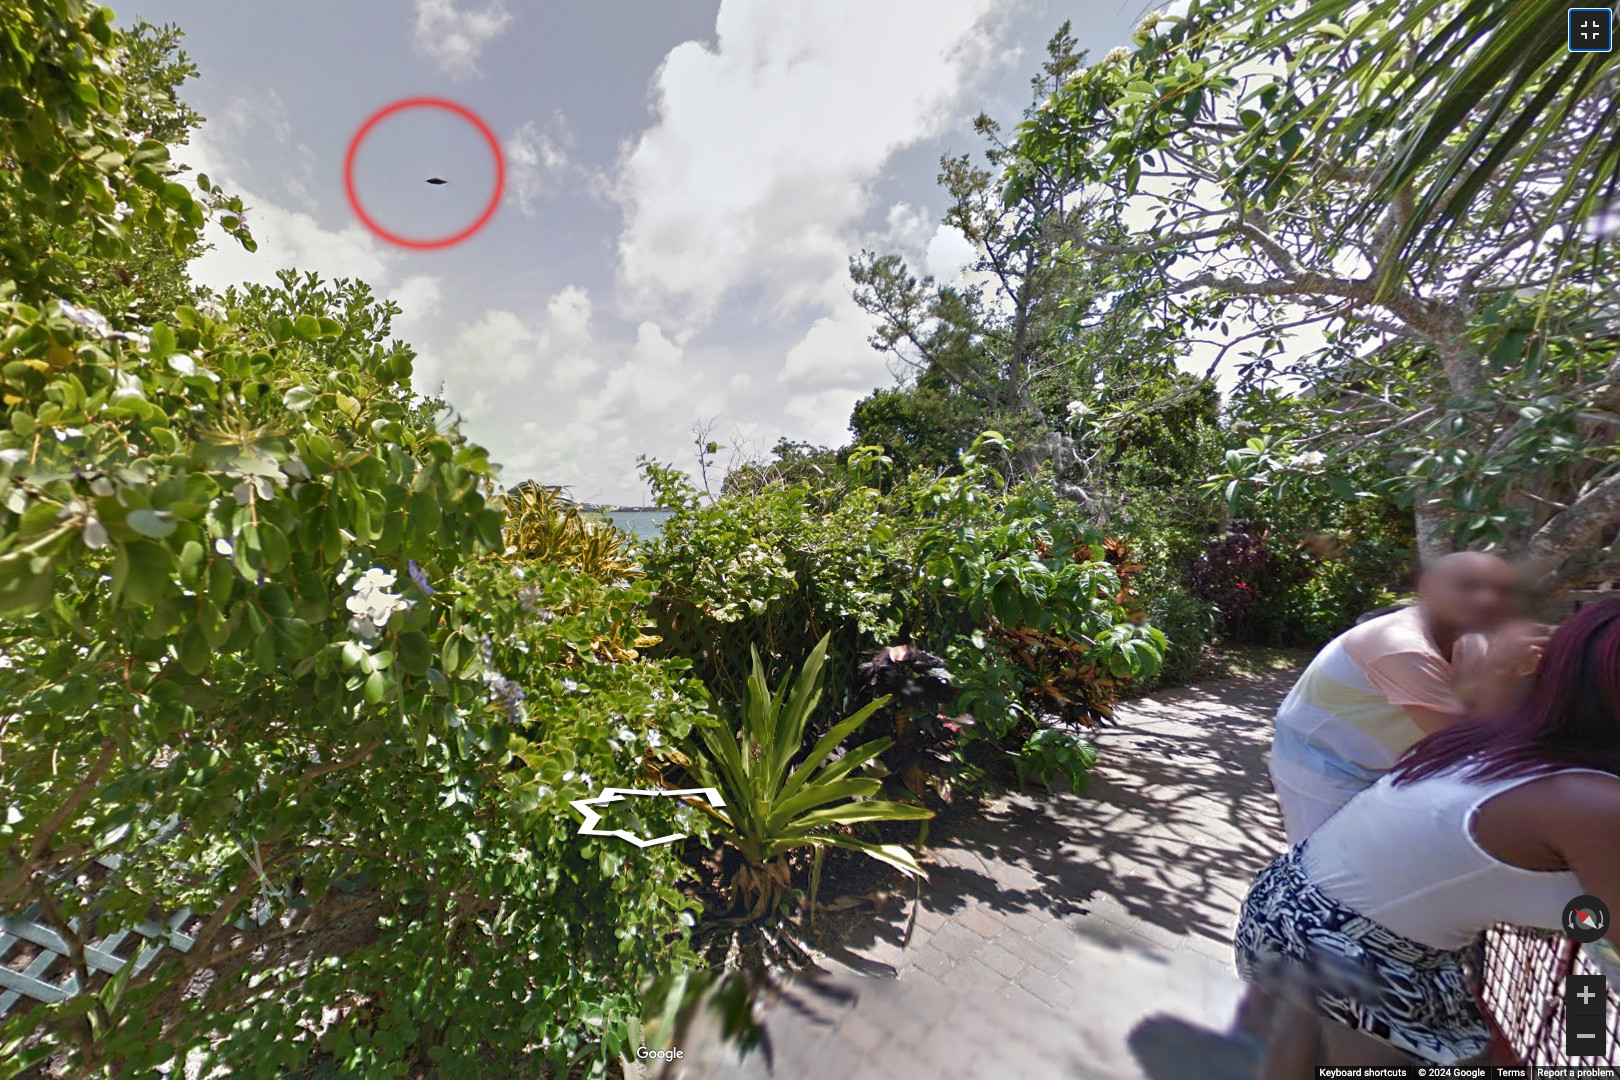 A Google Maps böngészése közben Bermuda egyik szigete felett láthatunk azonosíthatatlan repülő tárgyat (képünkön piros karikával)